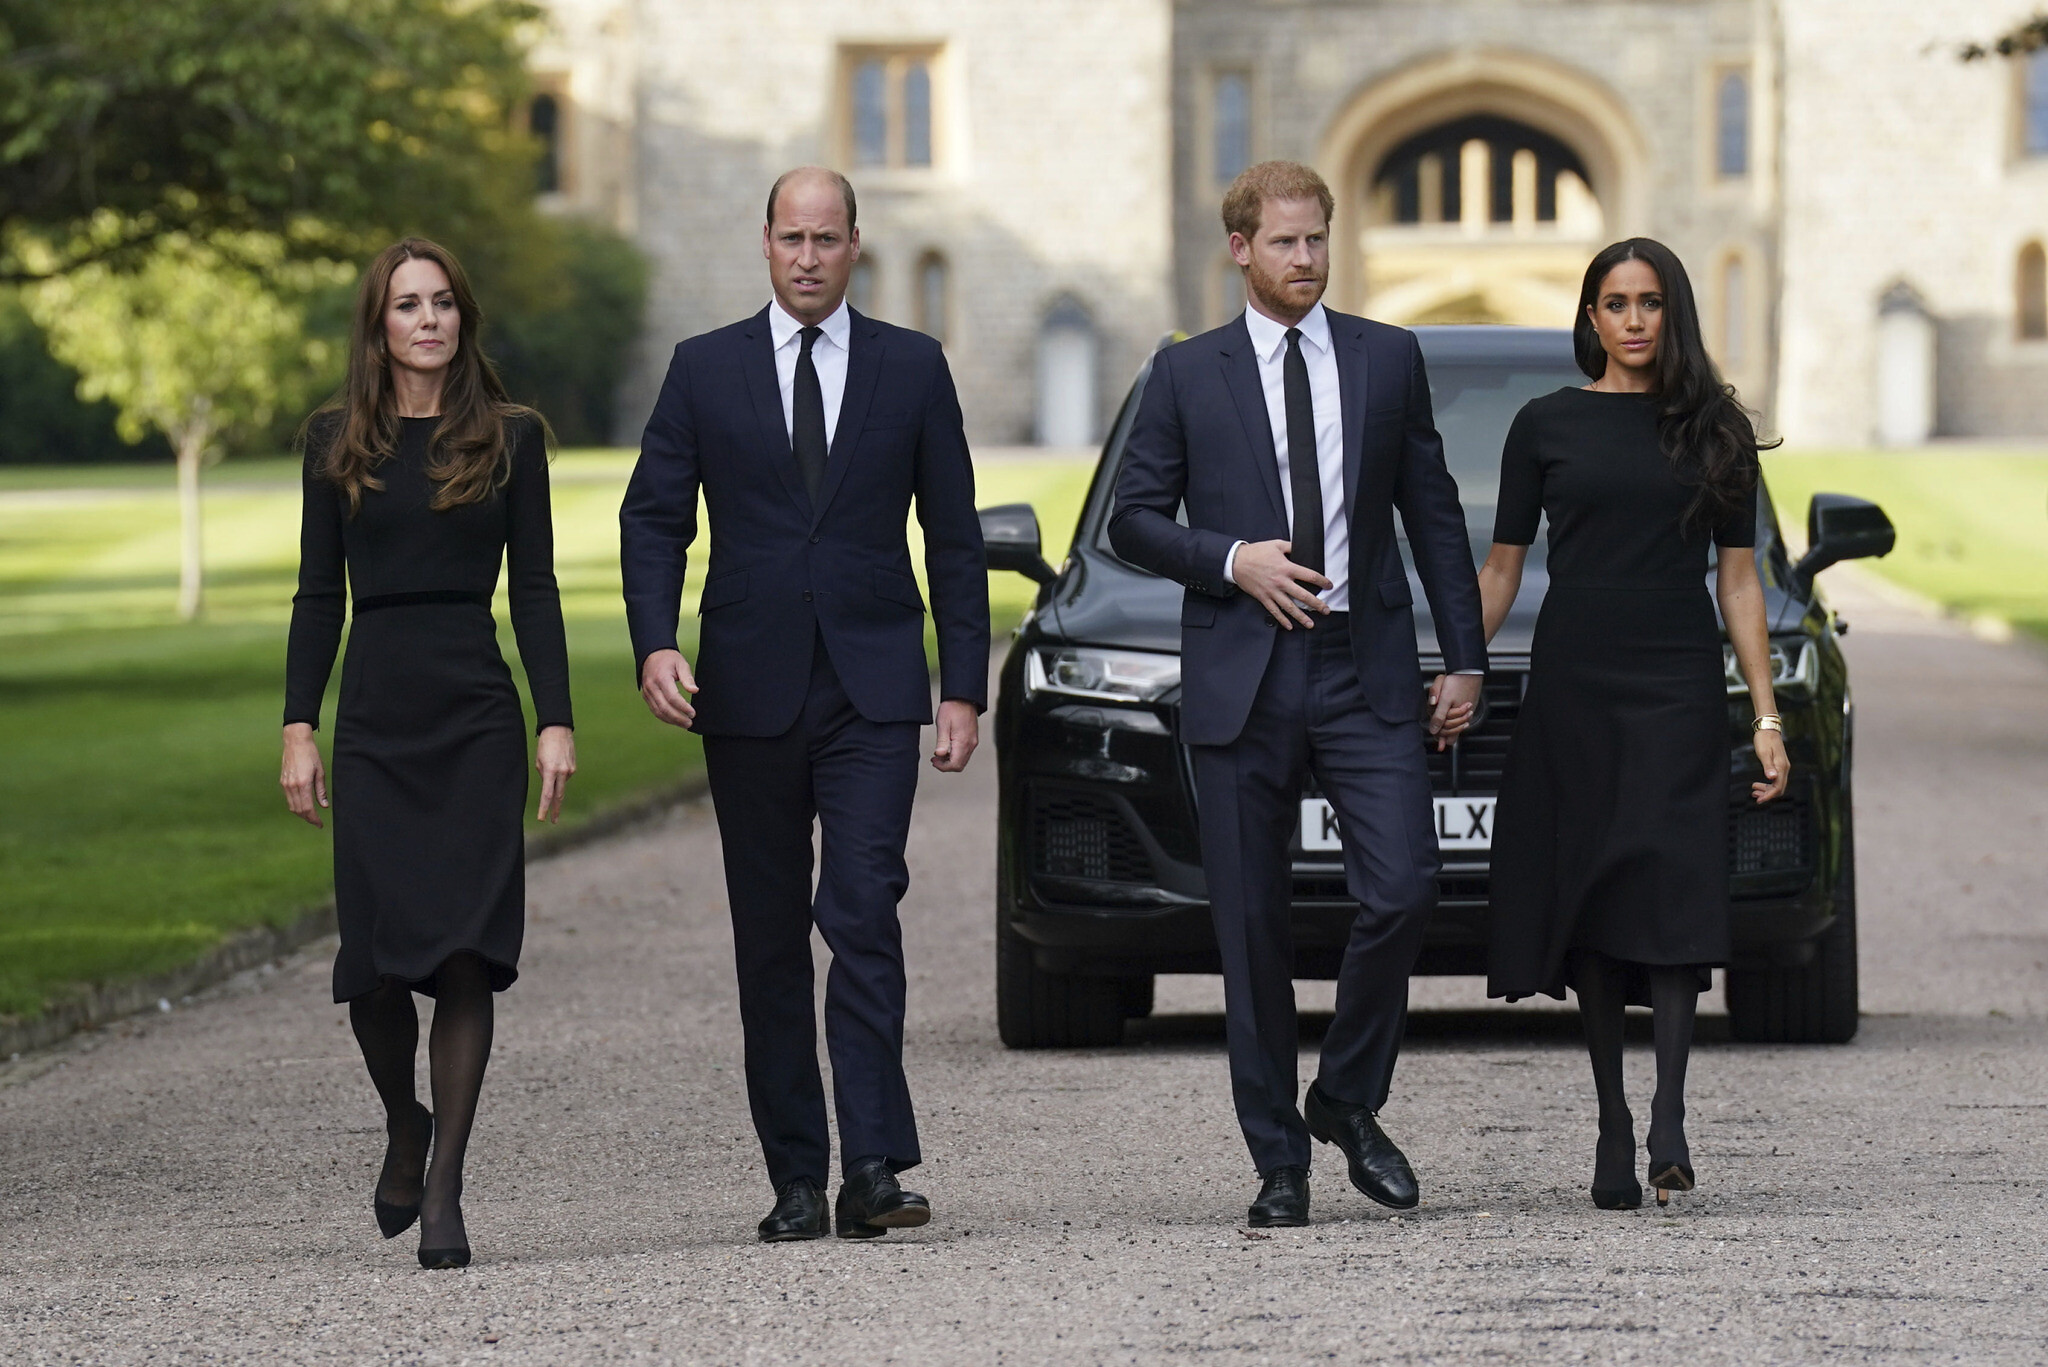 Kur do ta shohim sërish në publik familjen mbretërore pas funeralit të Elizabeth?